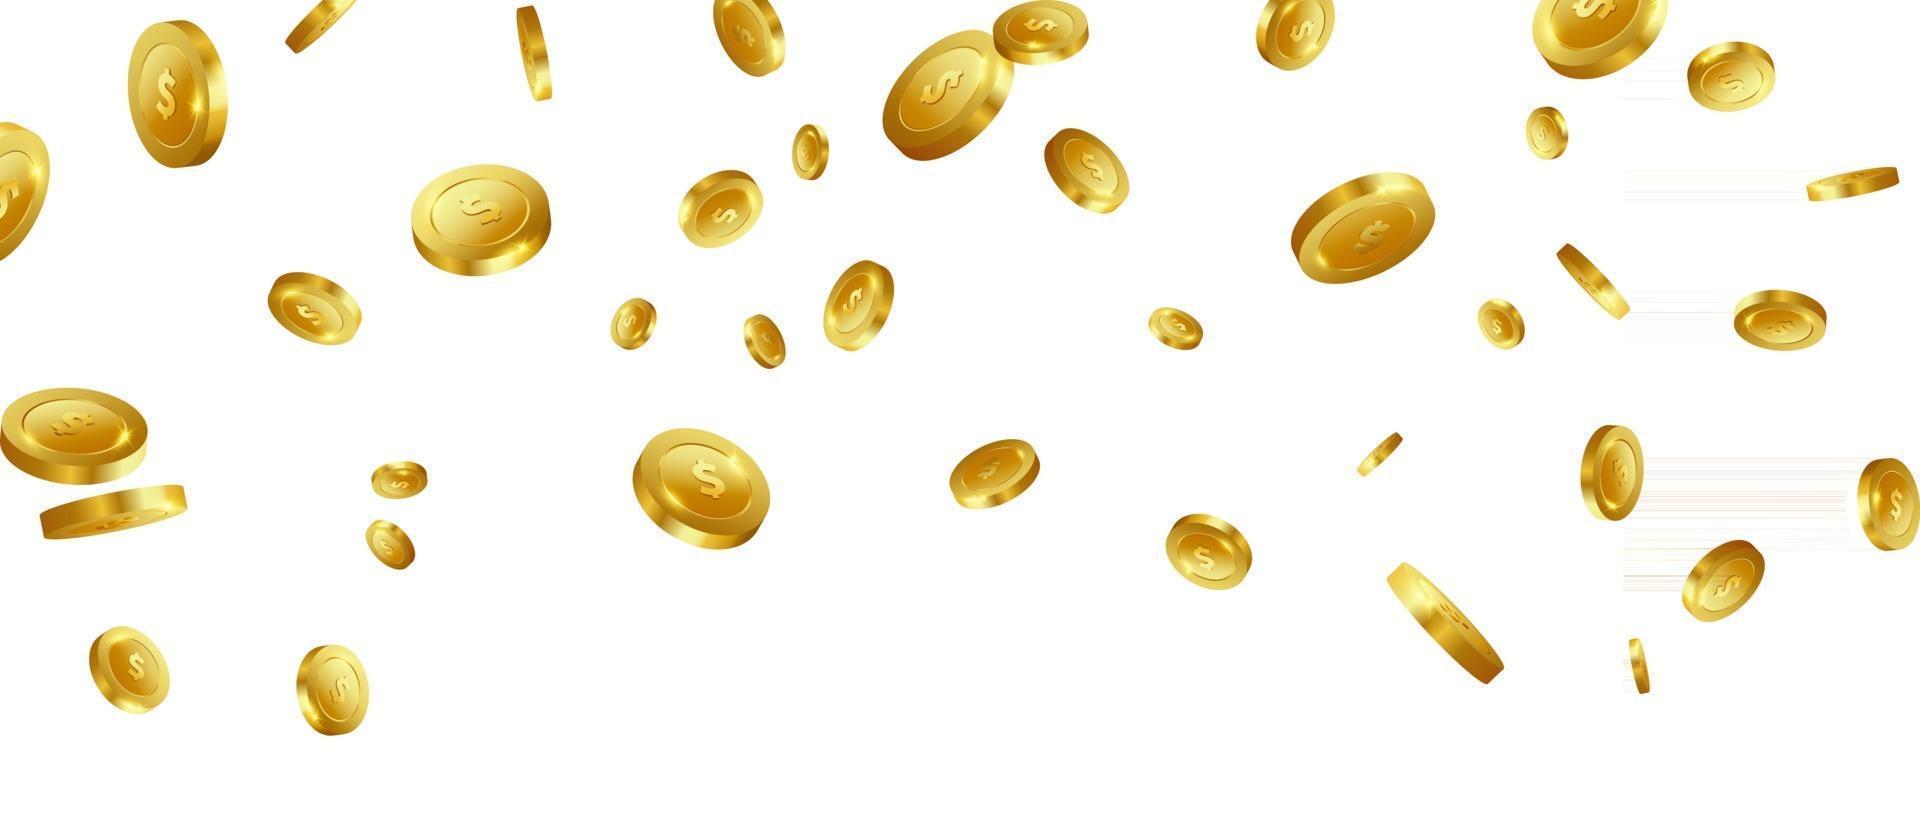 gouden munten casino luxe vip-uitnodiging met confetti feest gokken banner achtergrond vector